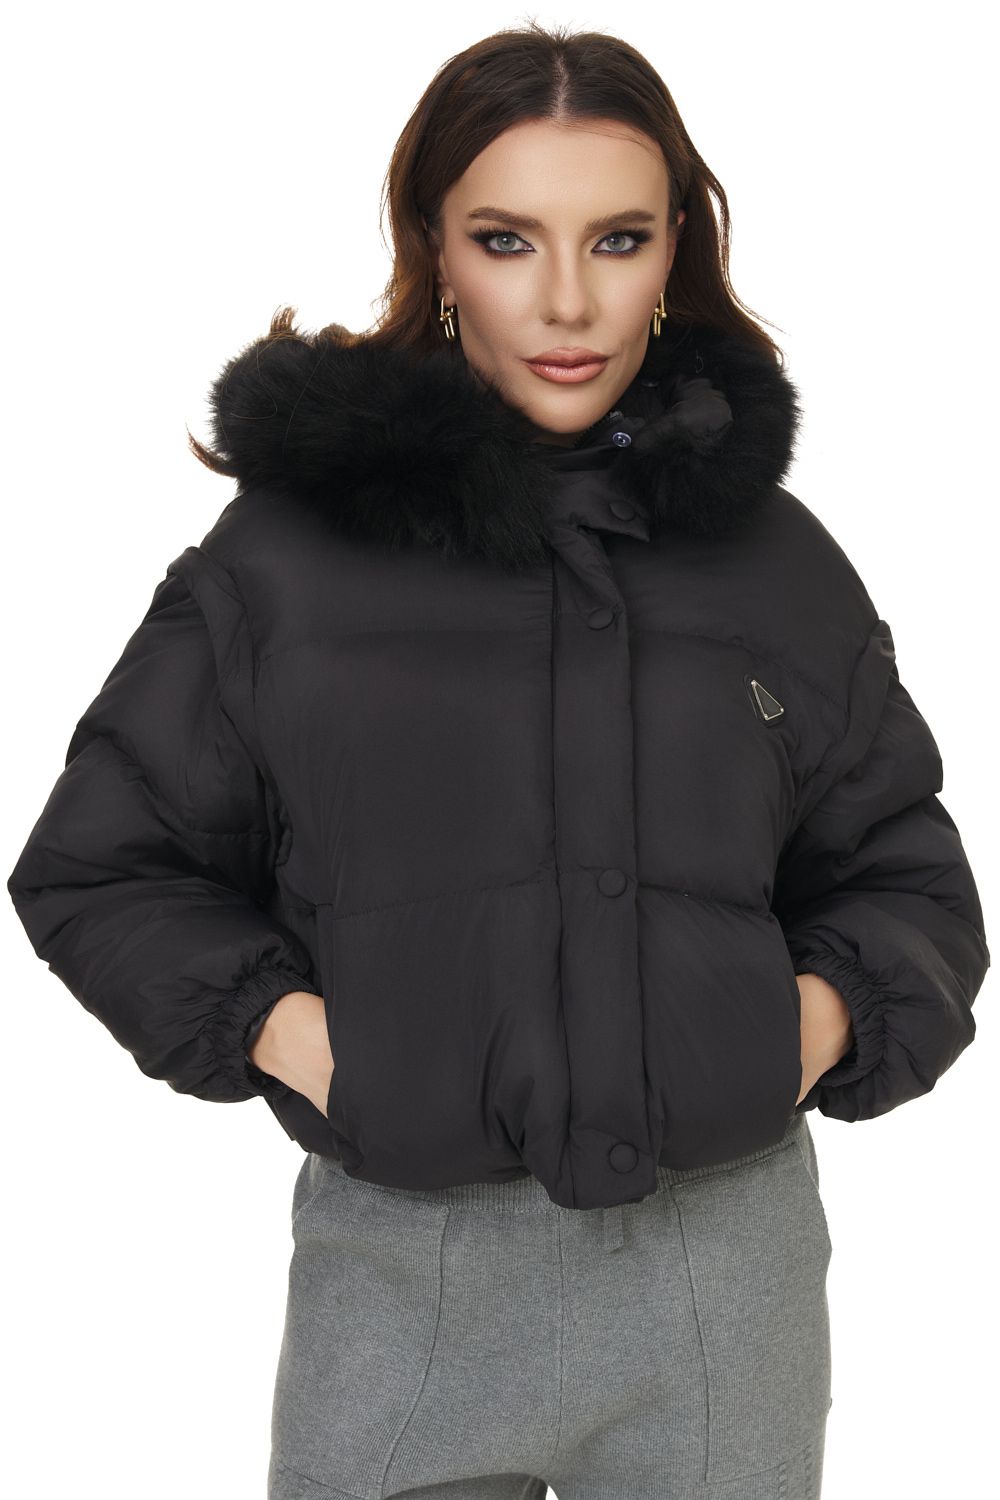 Fekete alkalmi női kabát Lacesy Bogas